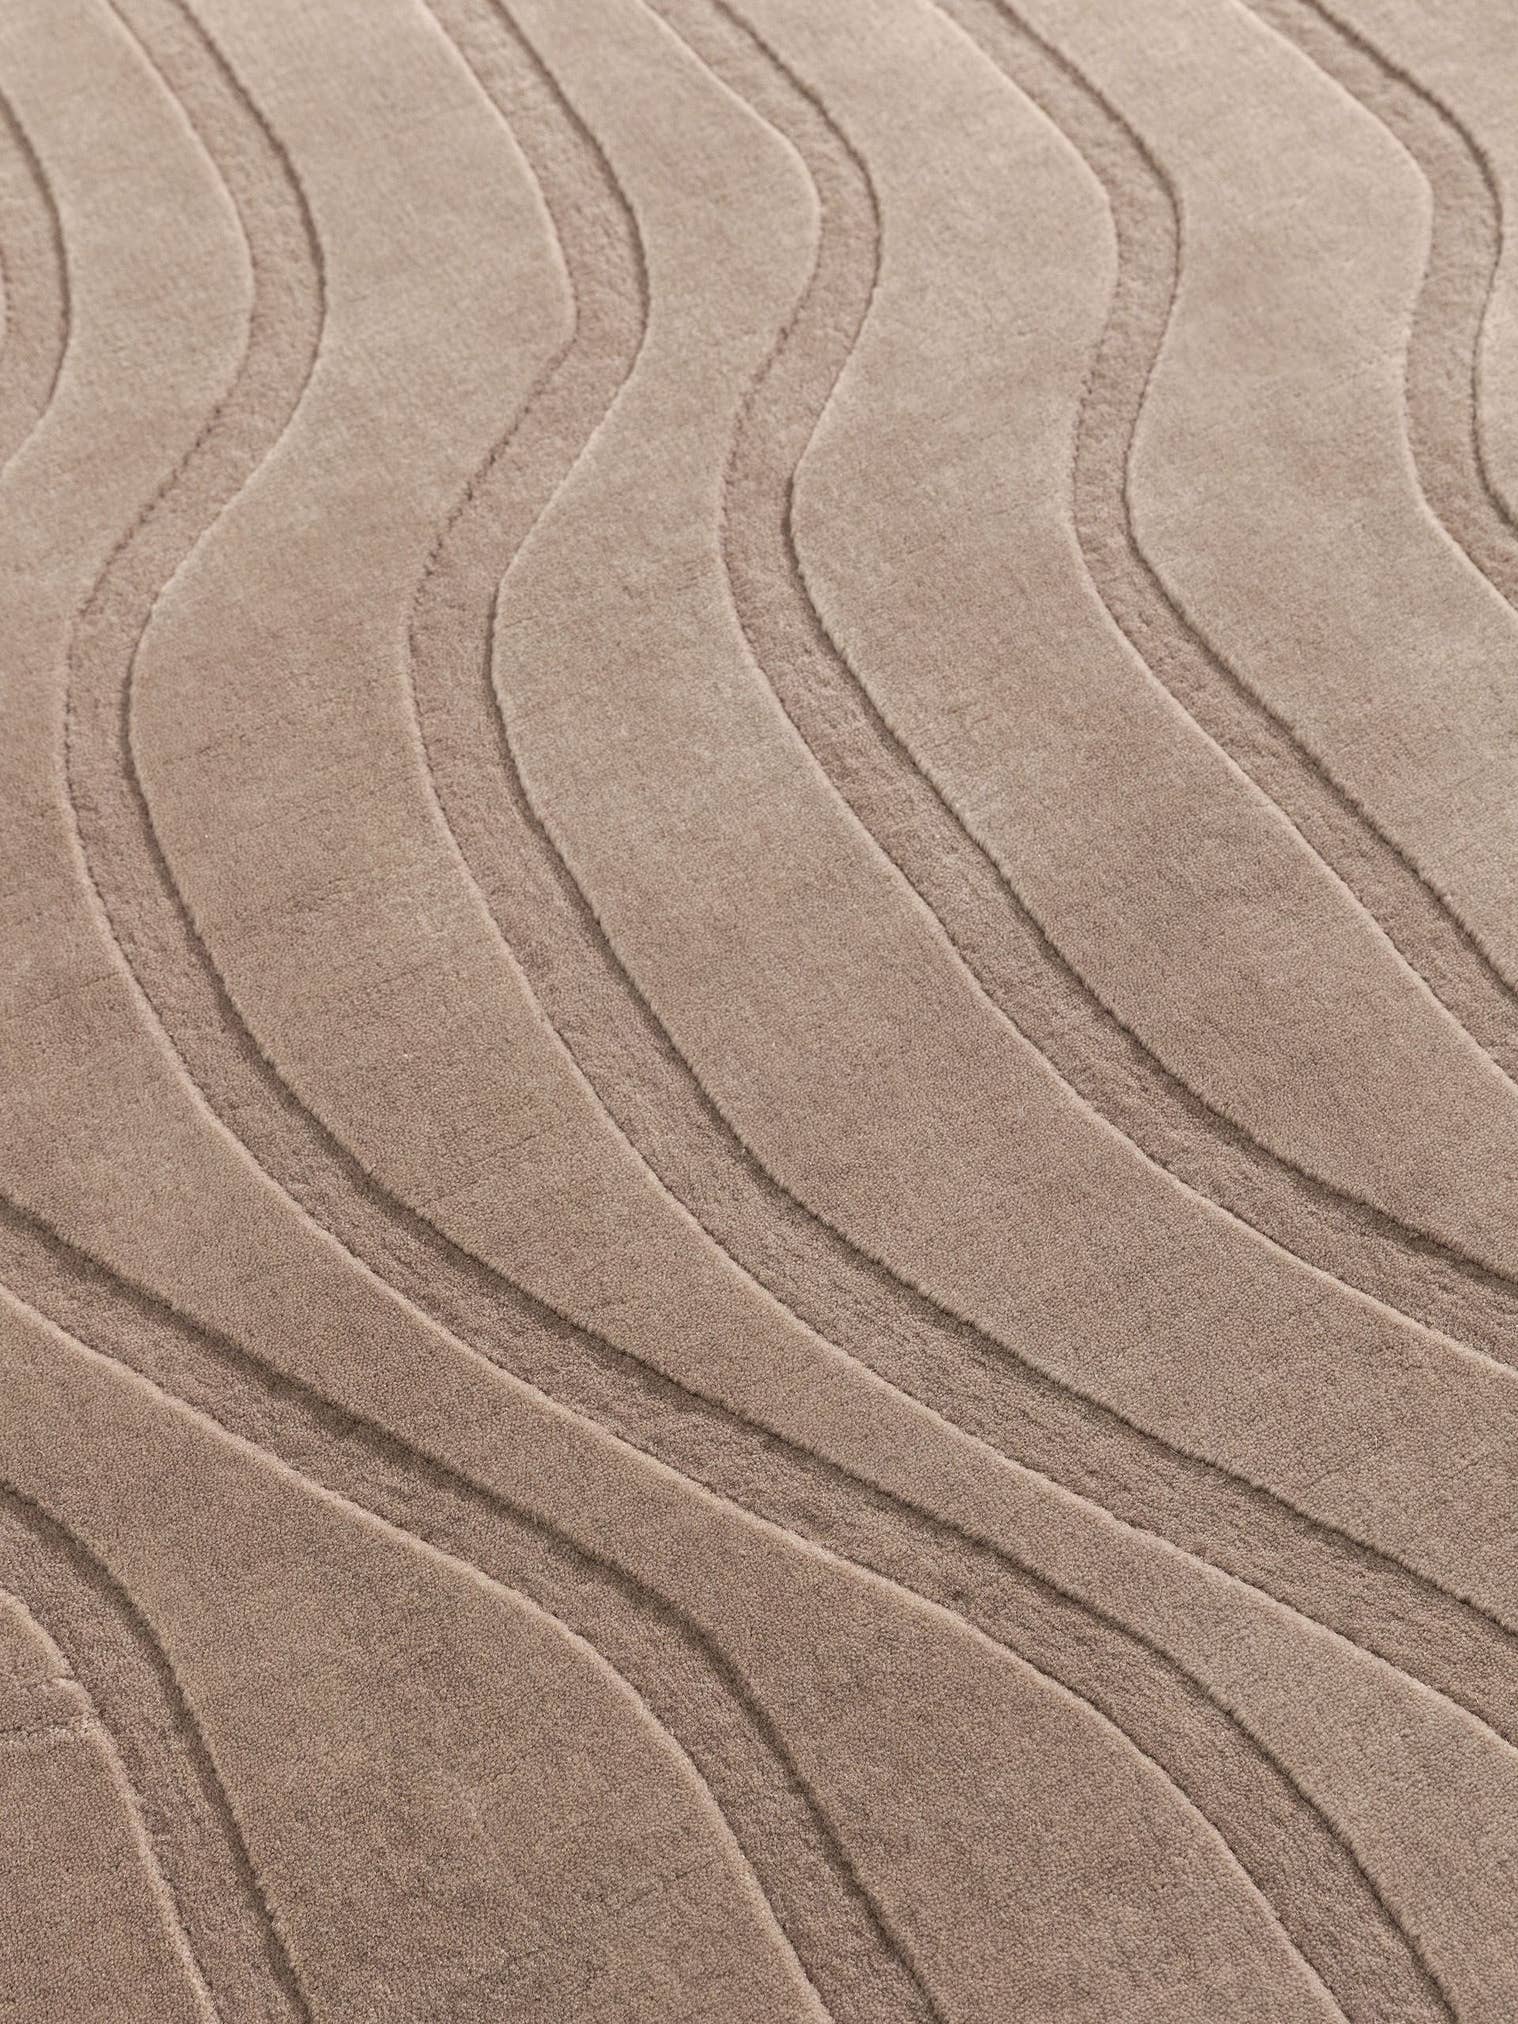 Teppich aus 100% Wolle (aus Neuseeland) in Taupe mit 6 bis 10 mm hohem Flor von benuta Finest